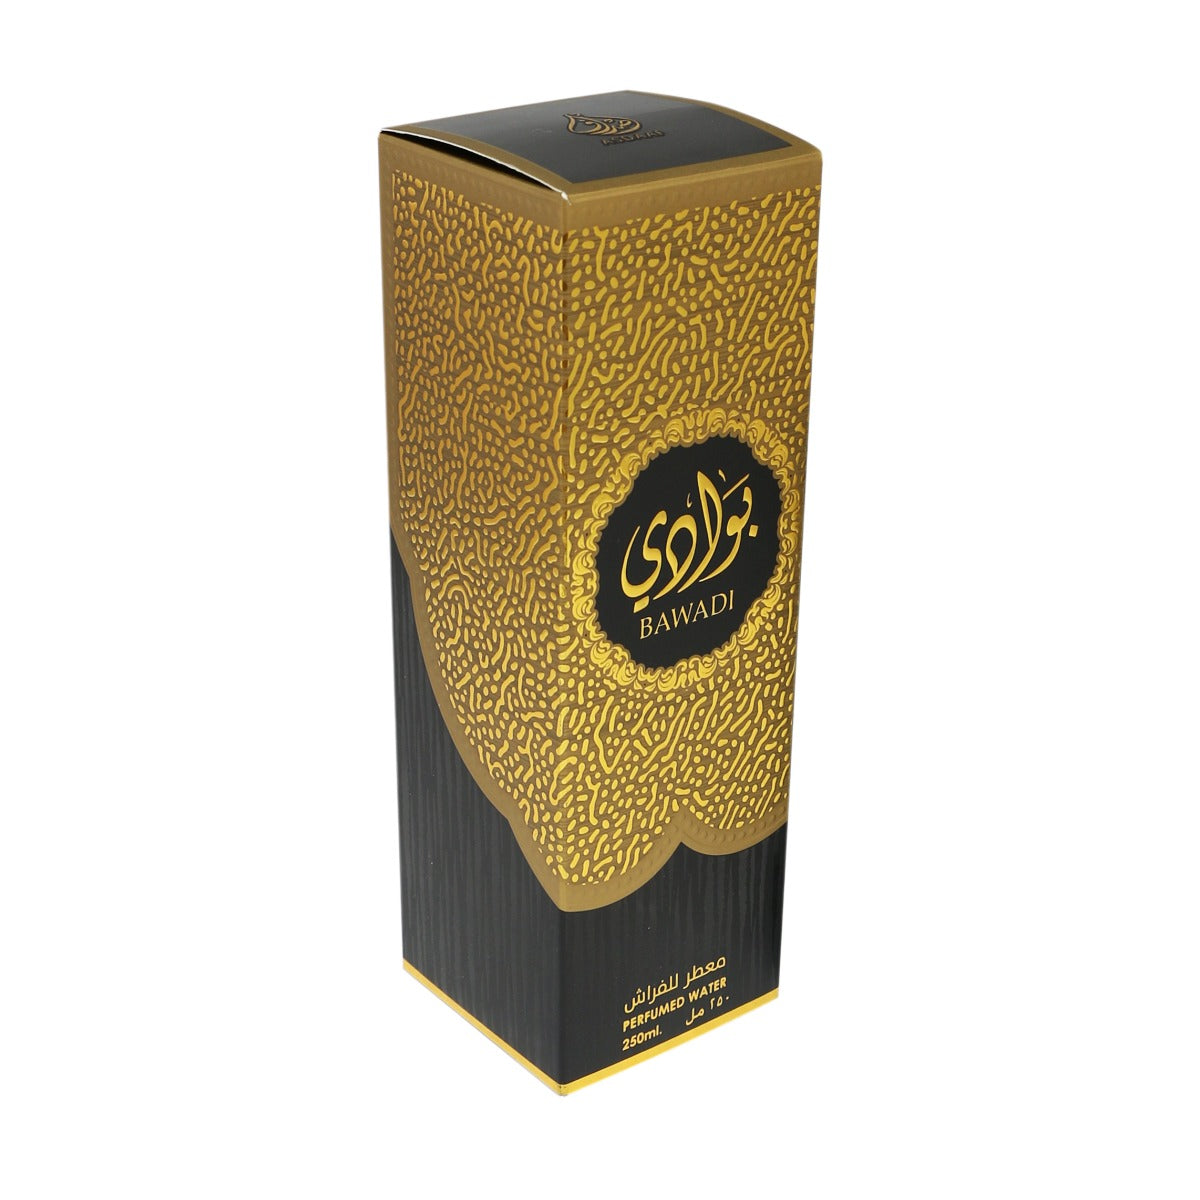 Lattafa Asdaaf Bawadi Perfumed Water, Room Freshener, Faraash 250ml - samawa perfumes 